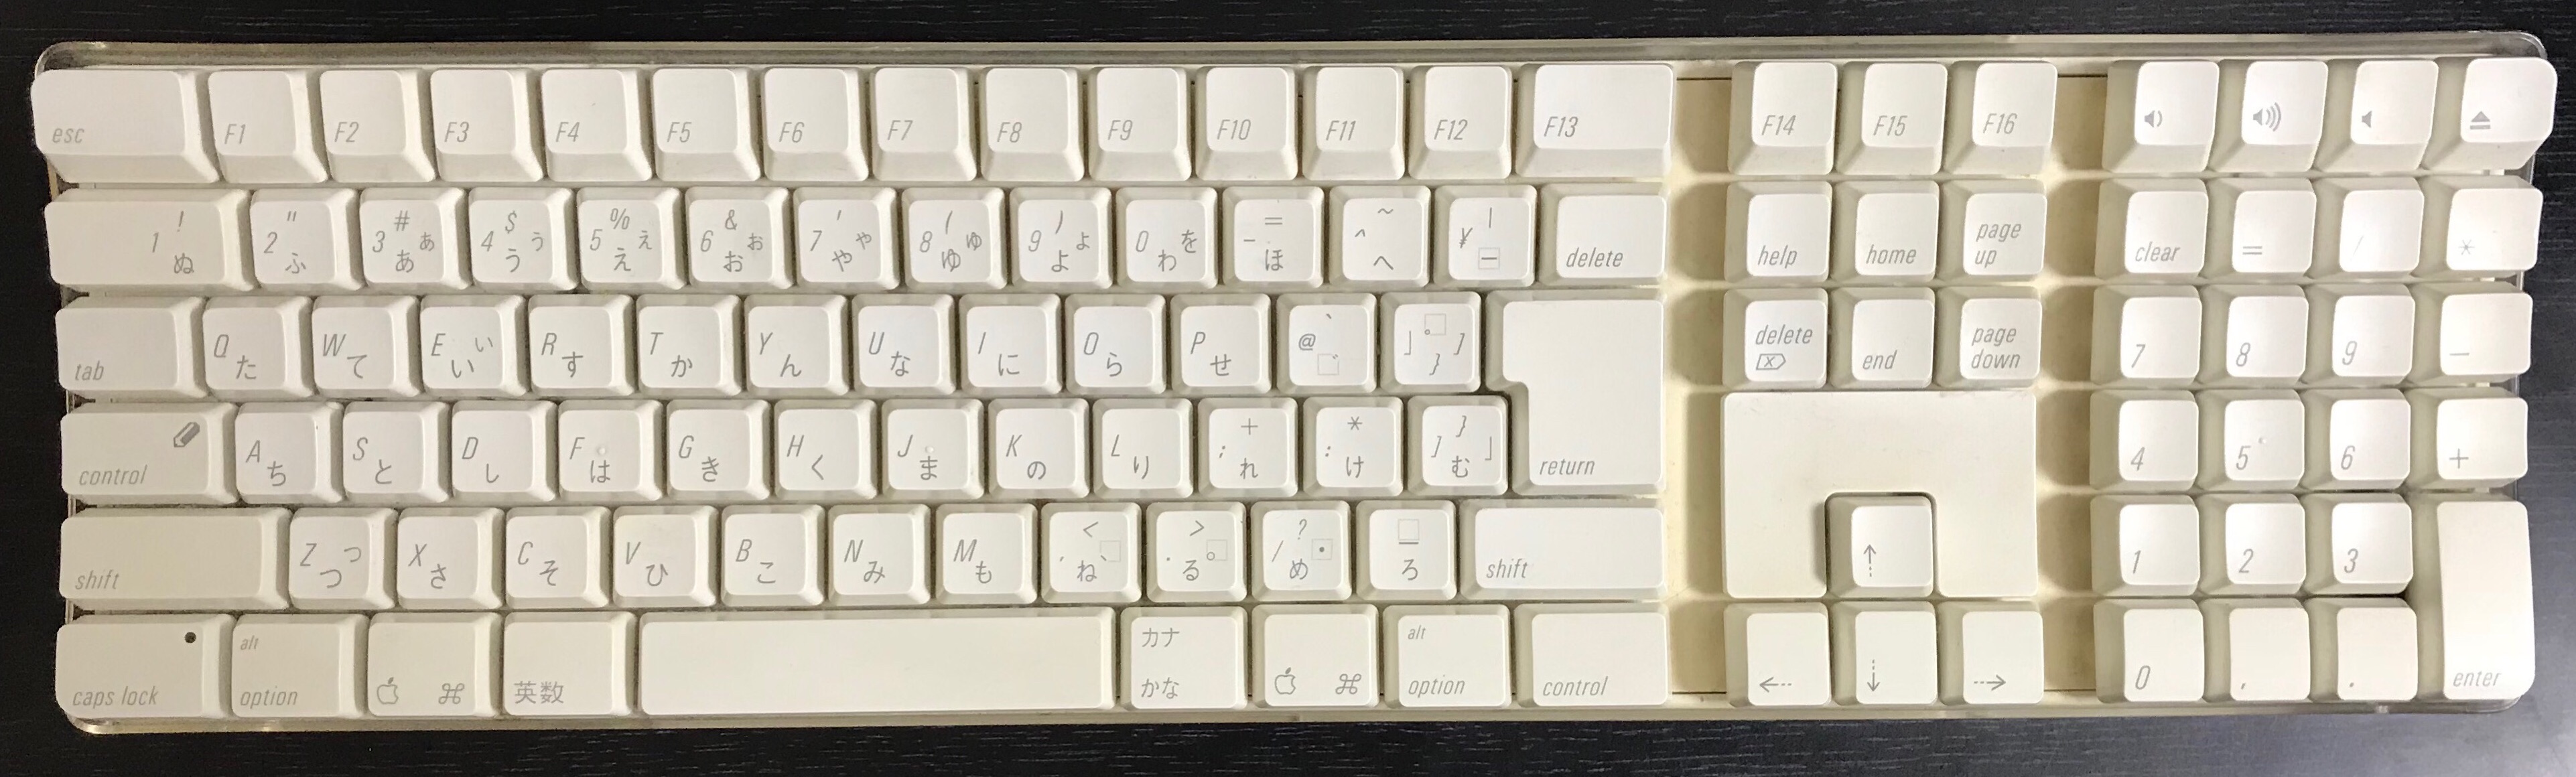 Apple Wireless Keyboard M9270J/A A1016